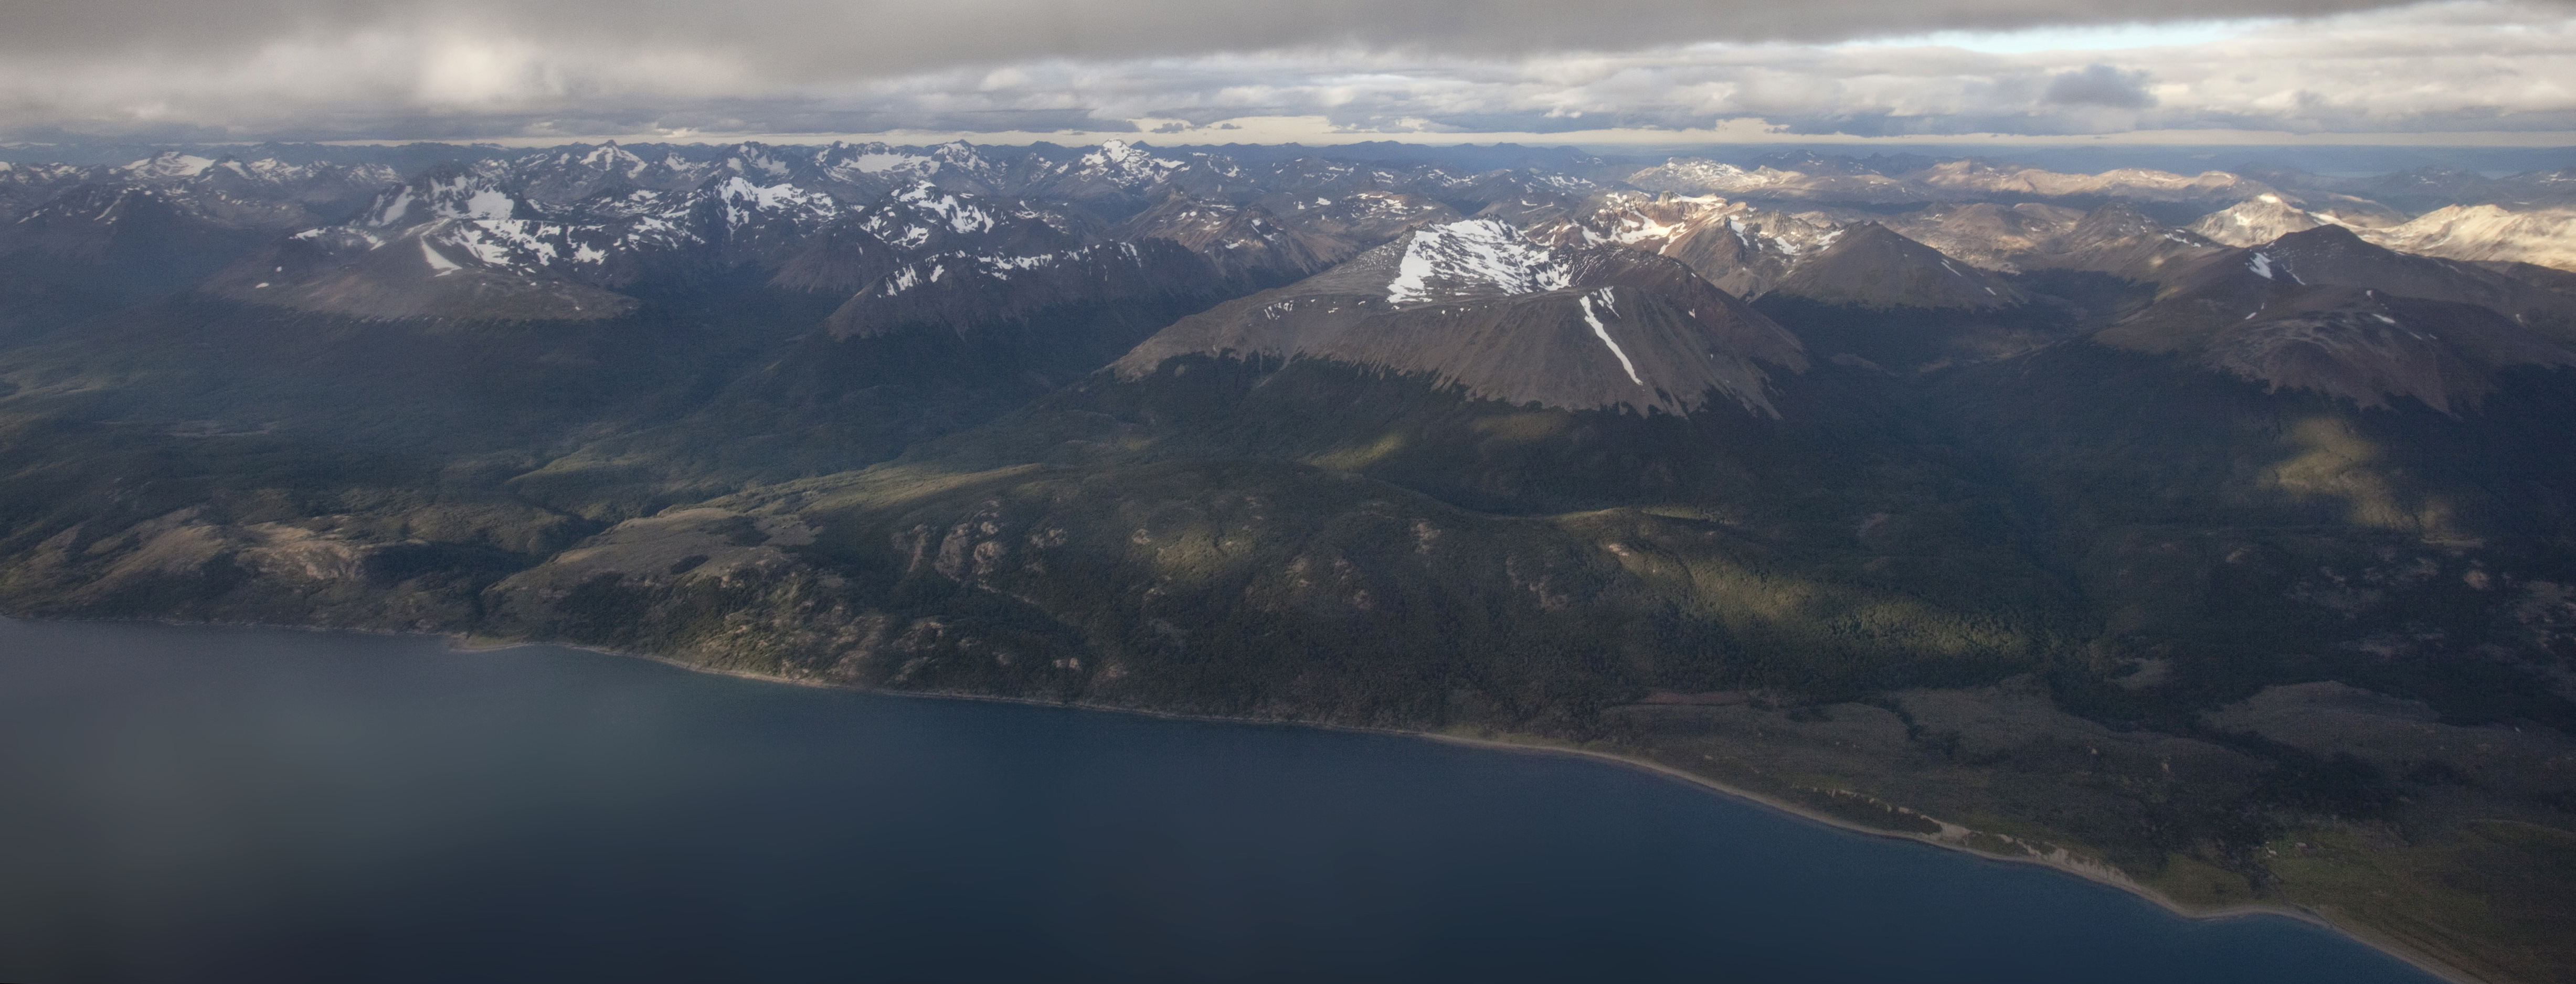 Naturaleza, cultura y aventura en Isla Tierra del Fuego